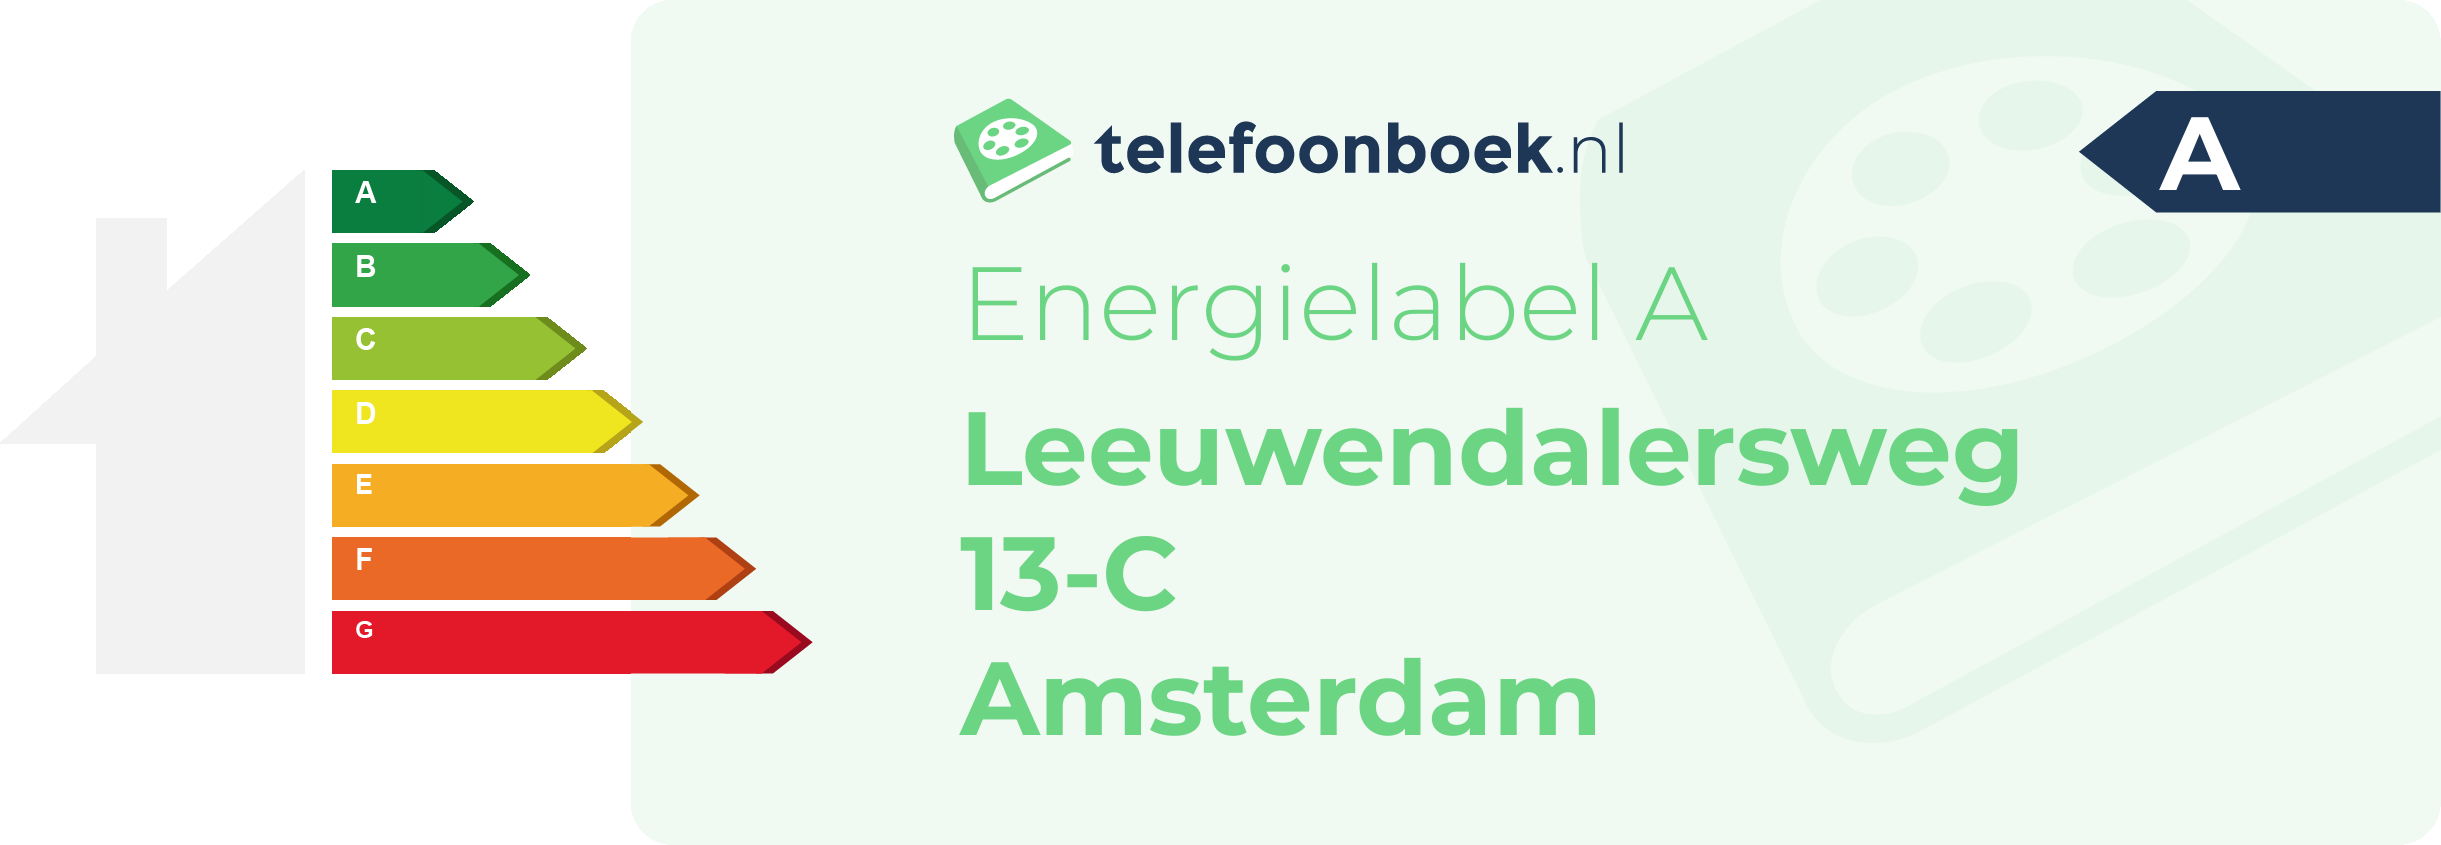 Energielabel Leeuwendalersweg 13-C Amsterdam